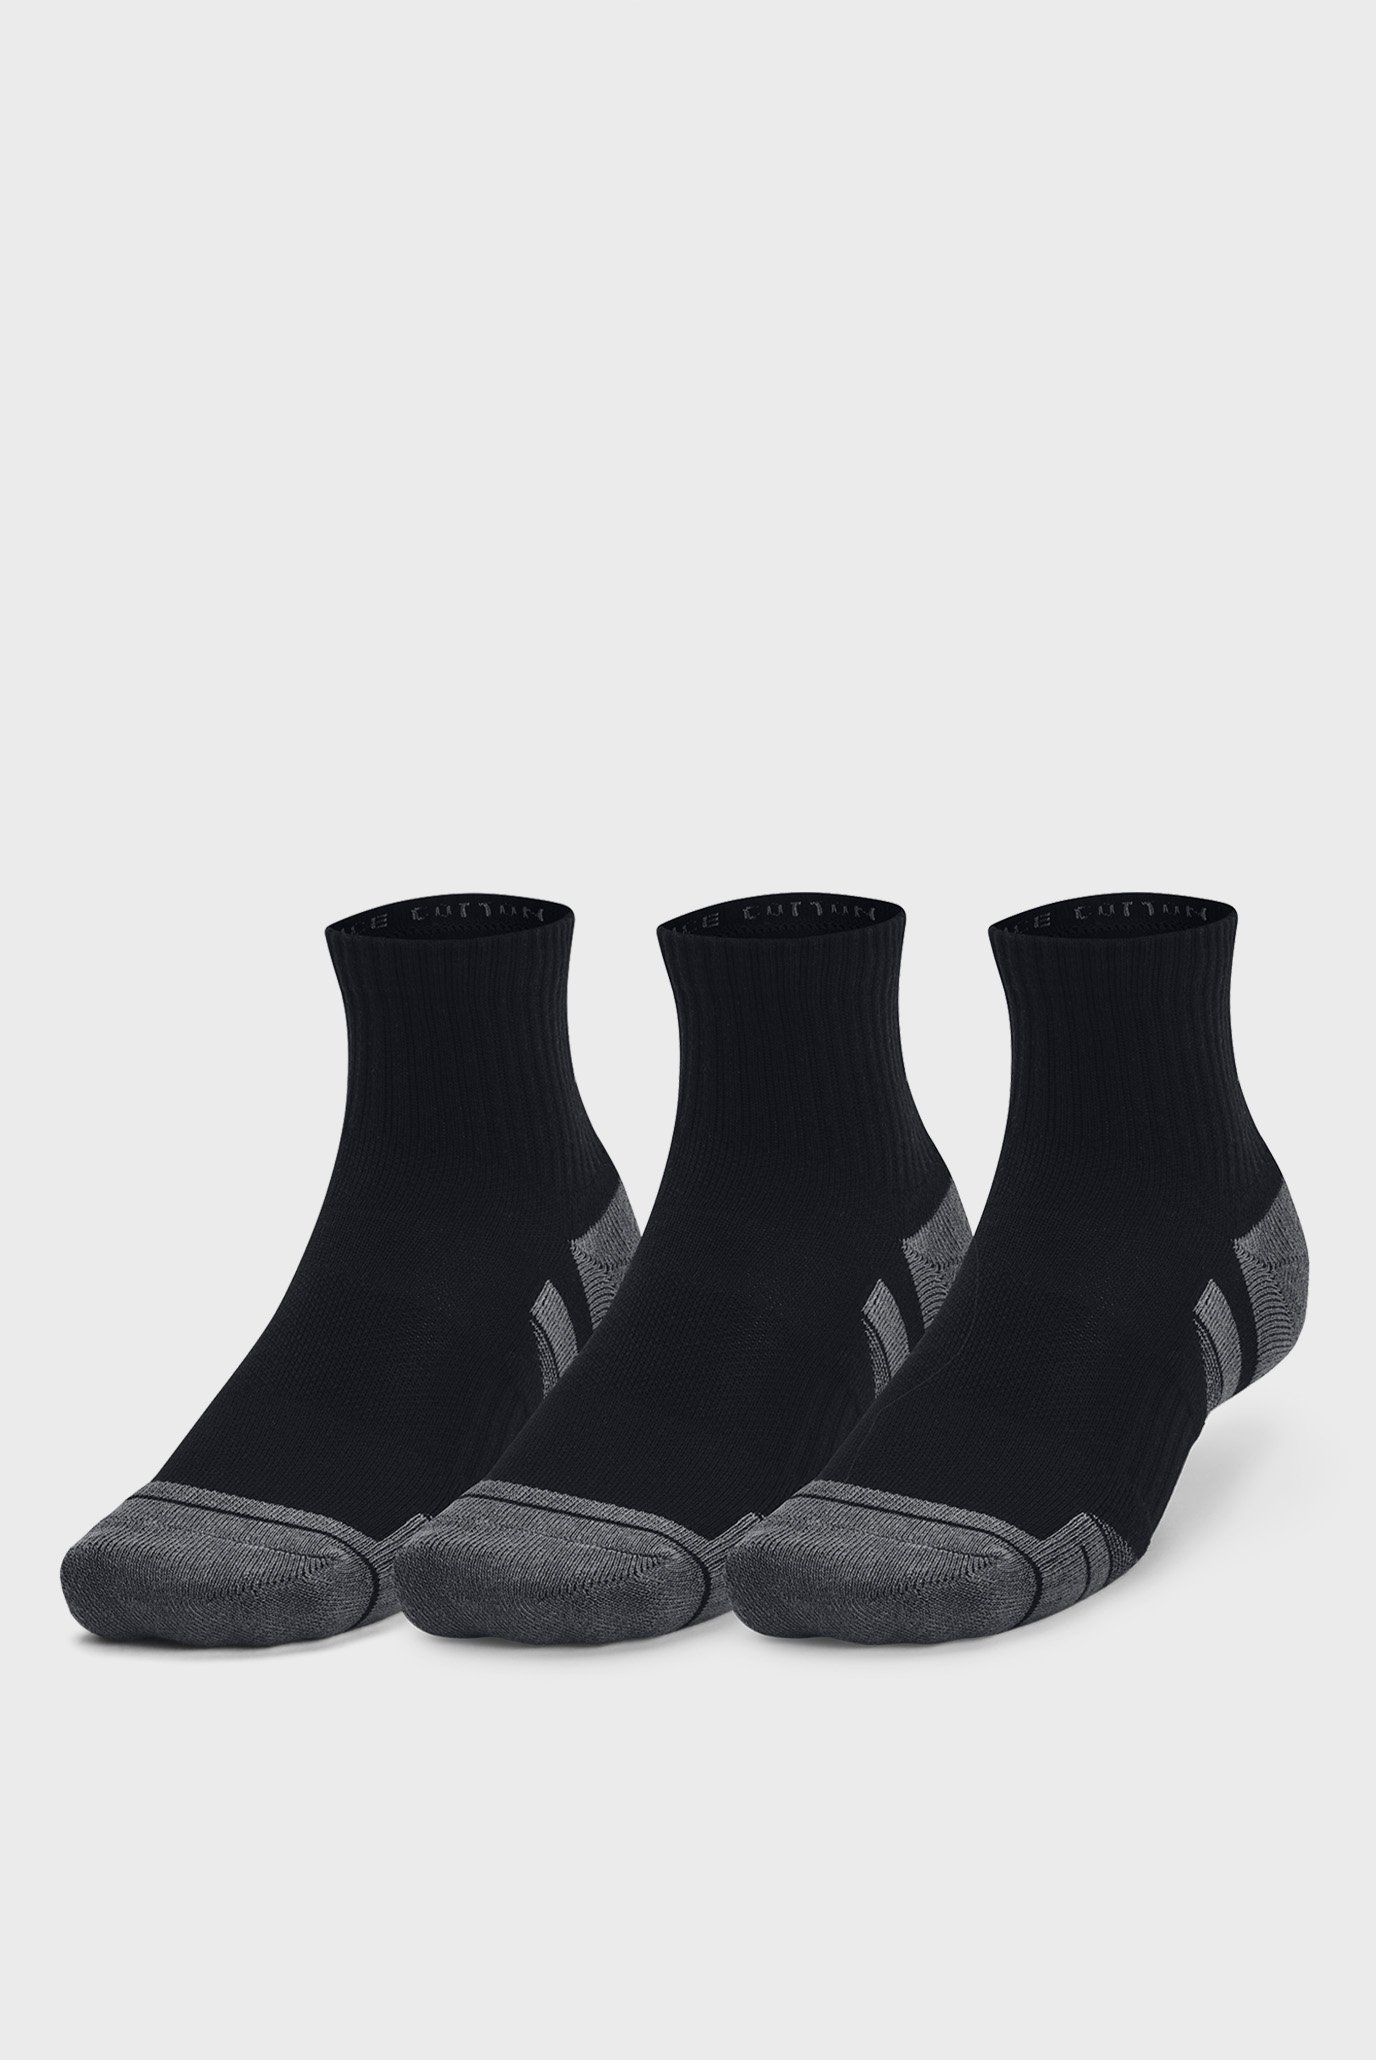 Черные носки (3 пары) UA Performance Cotton 3p Qtr 1